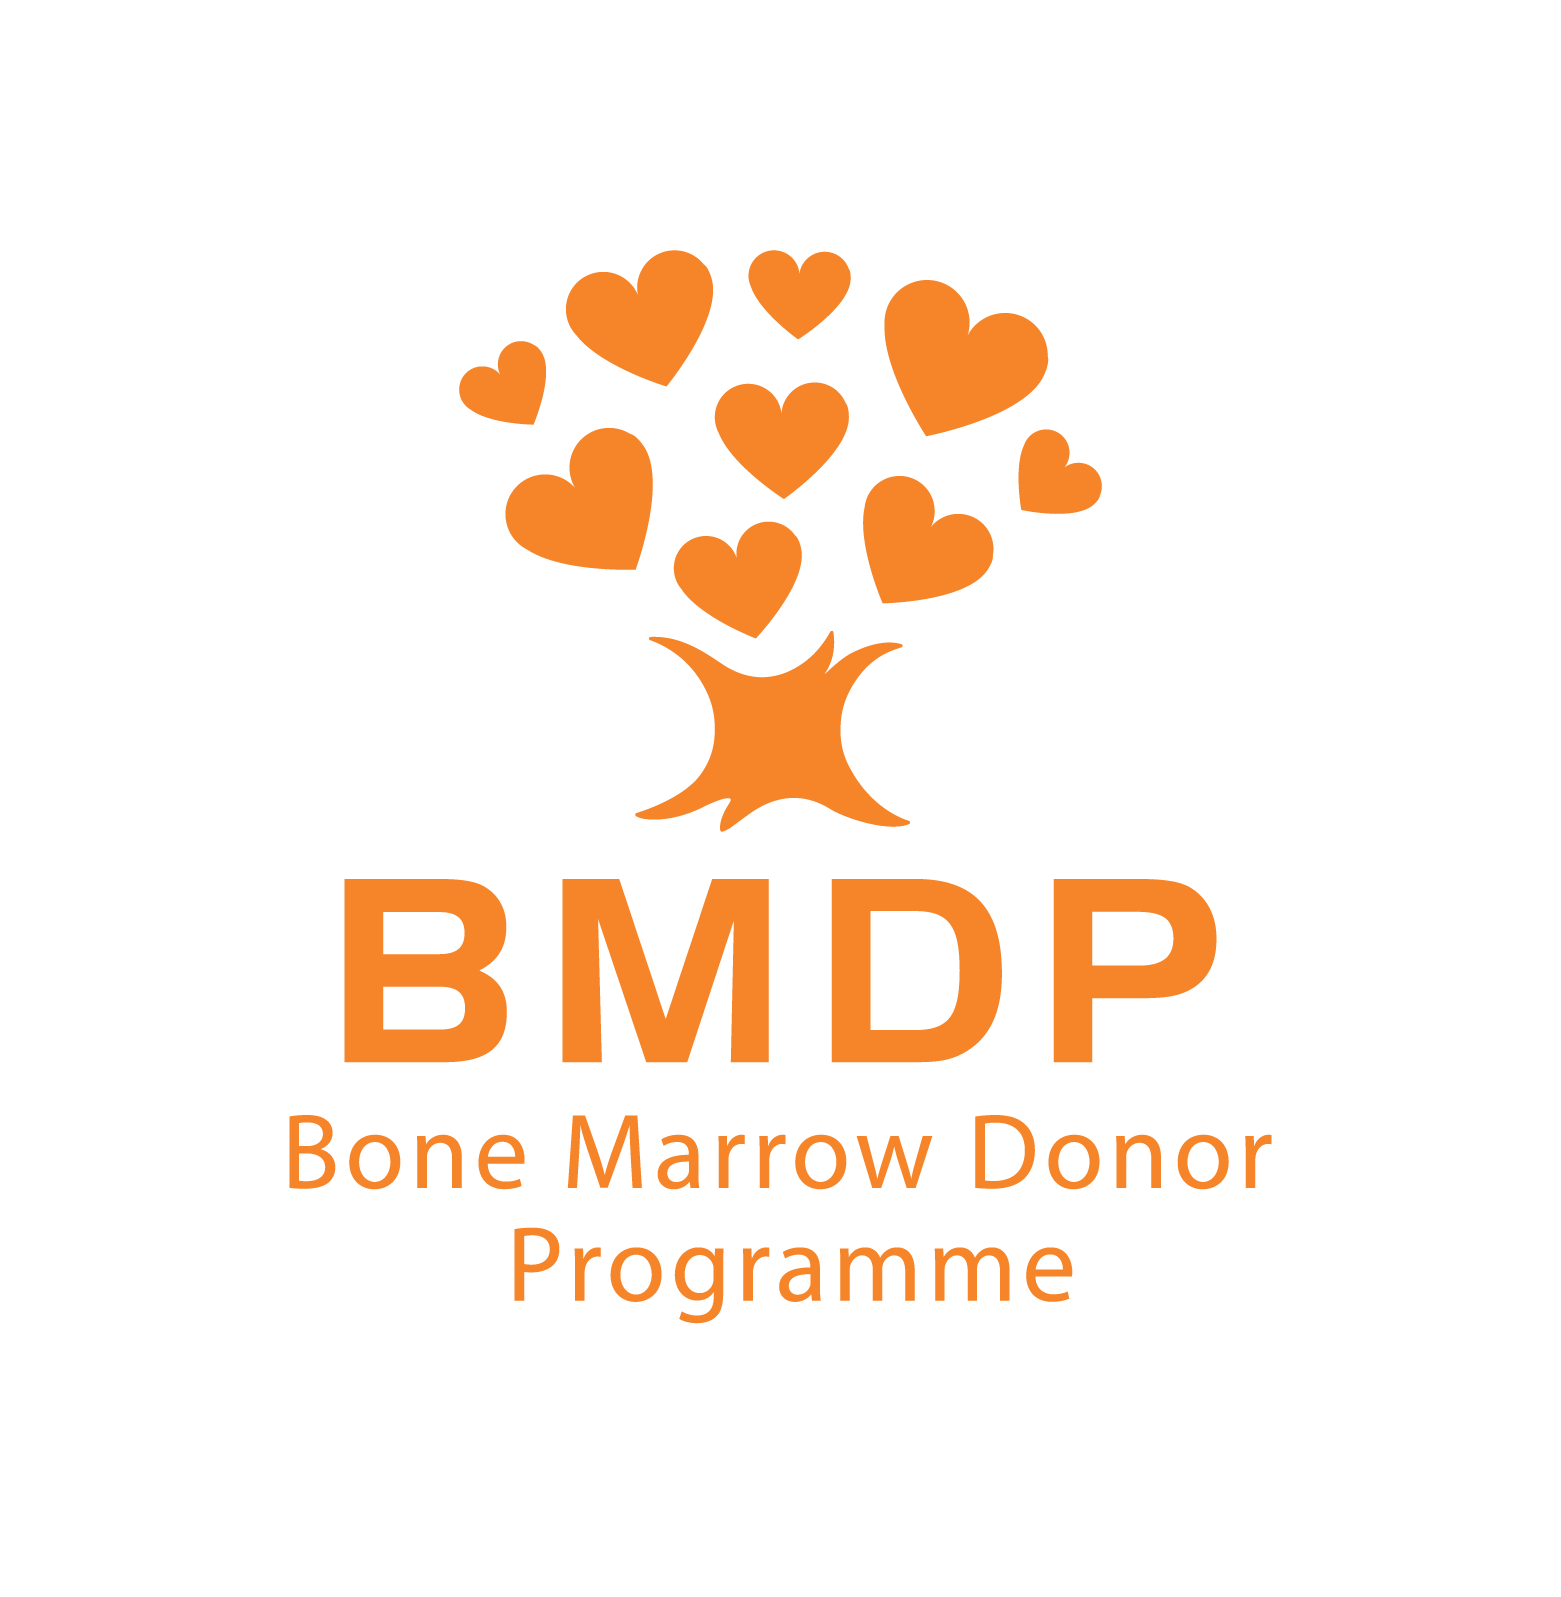 Bone Marrow Donor Programme, The company logo